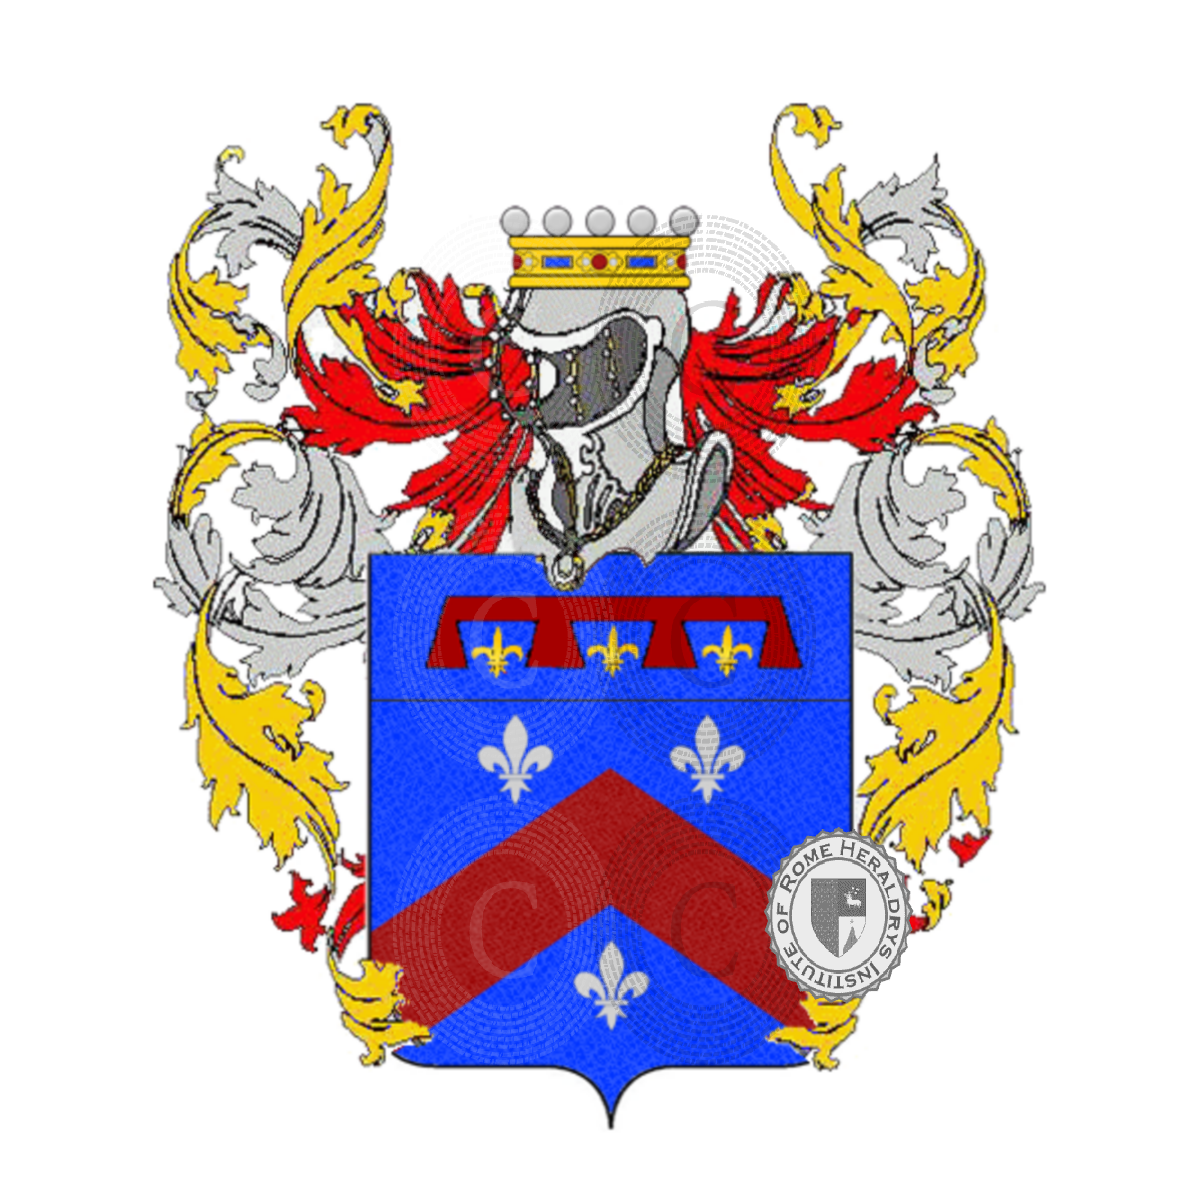 Escudo de la familiaNicolini, Niccolini,Nicolini Sirigatti